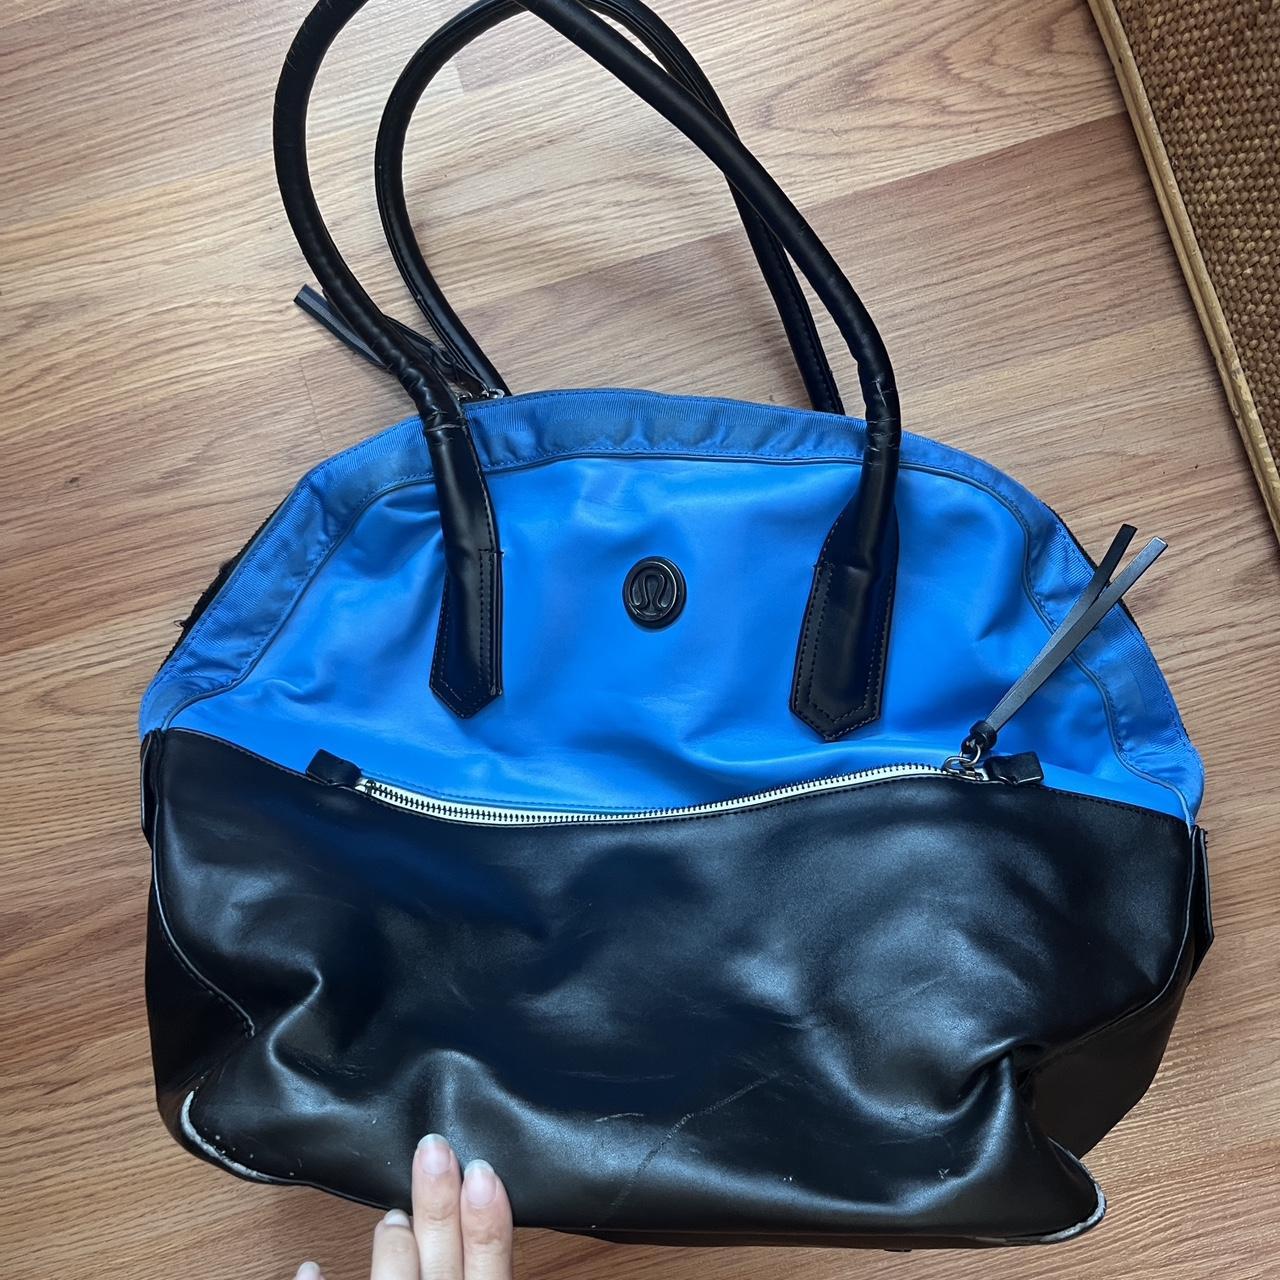 Lululemon Women's Bag - Blue